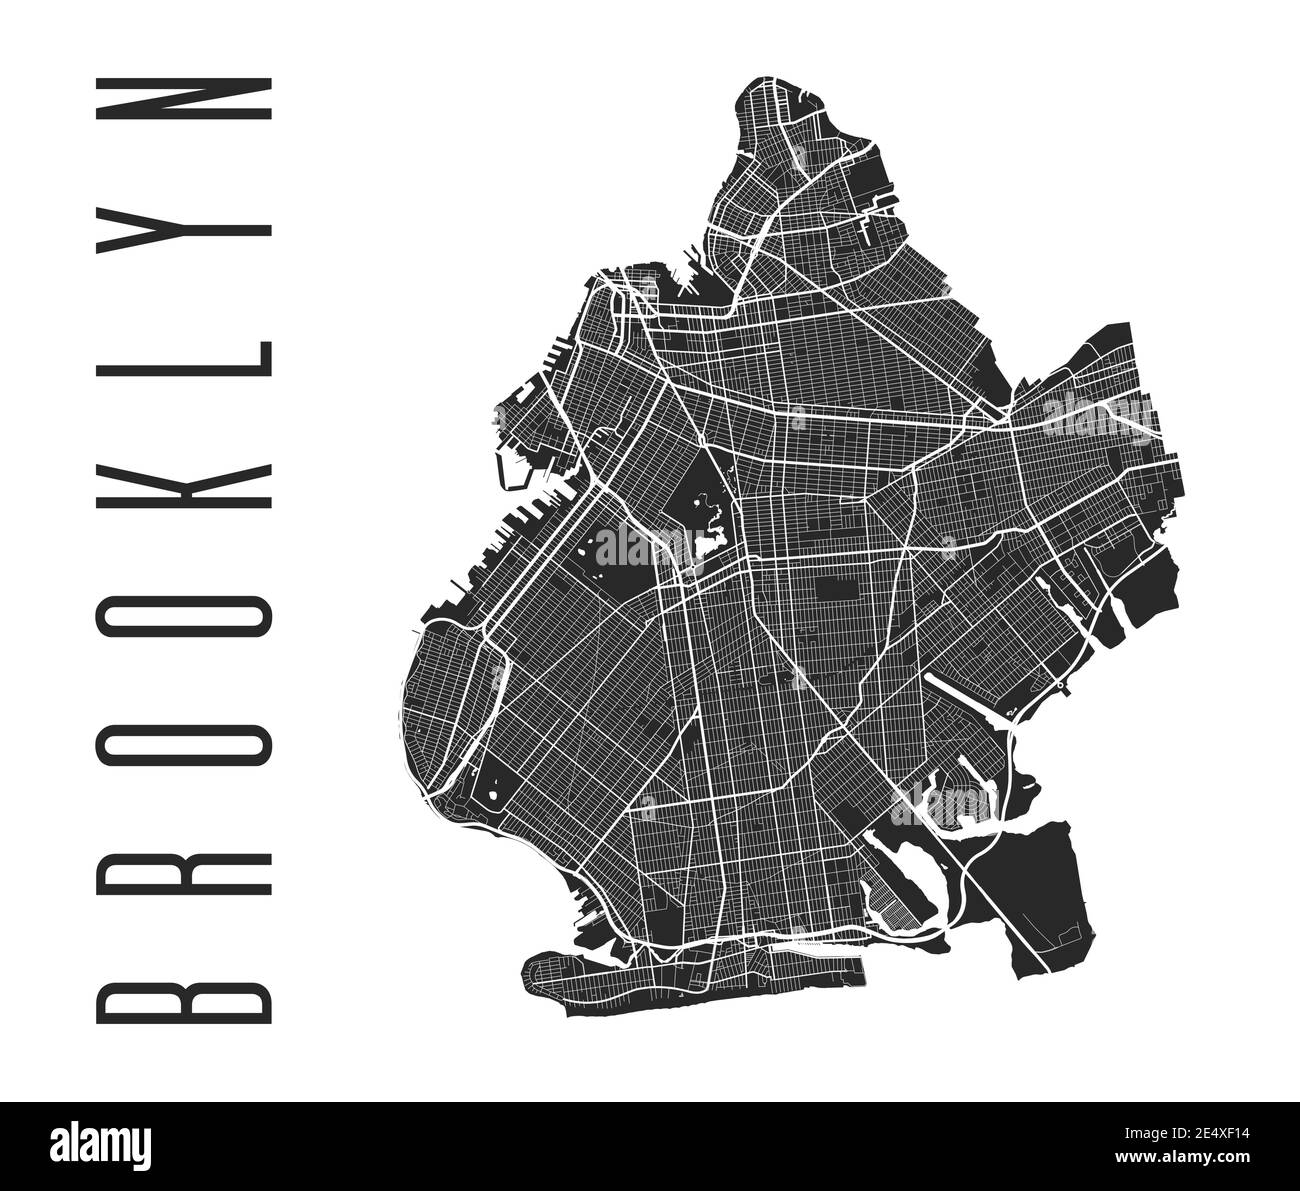 Affiche de carte de Brooklyn. Plan des rues du quartier de New York. Panorama urbain aria silhouette vue aérienne, style typographique. Baie de la Jamaïque, Oce de l'Atlantique Illustration de Vecteur